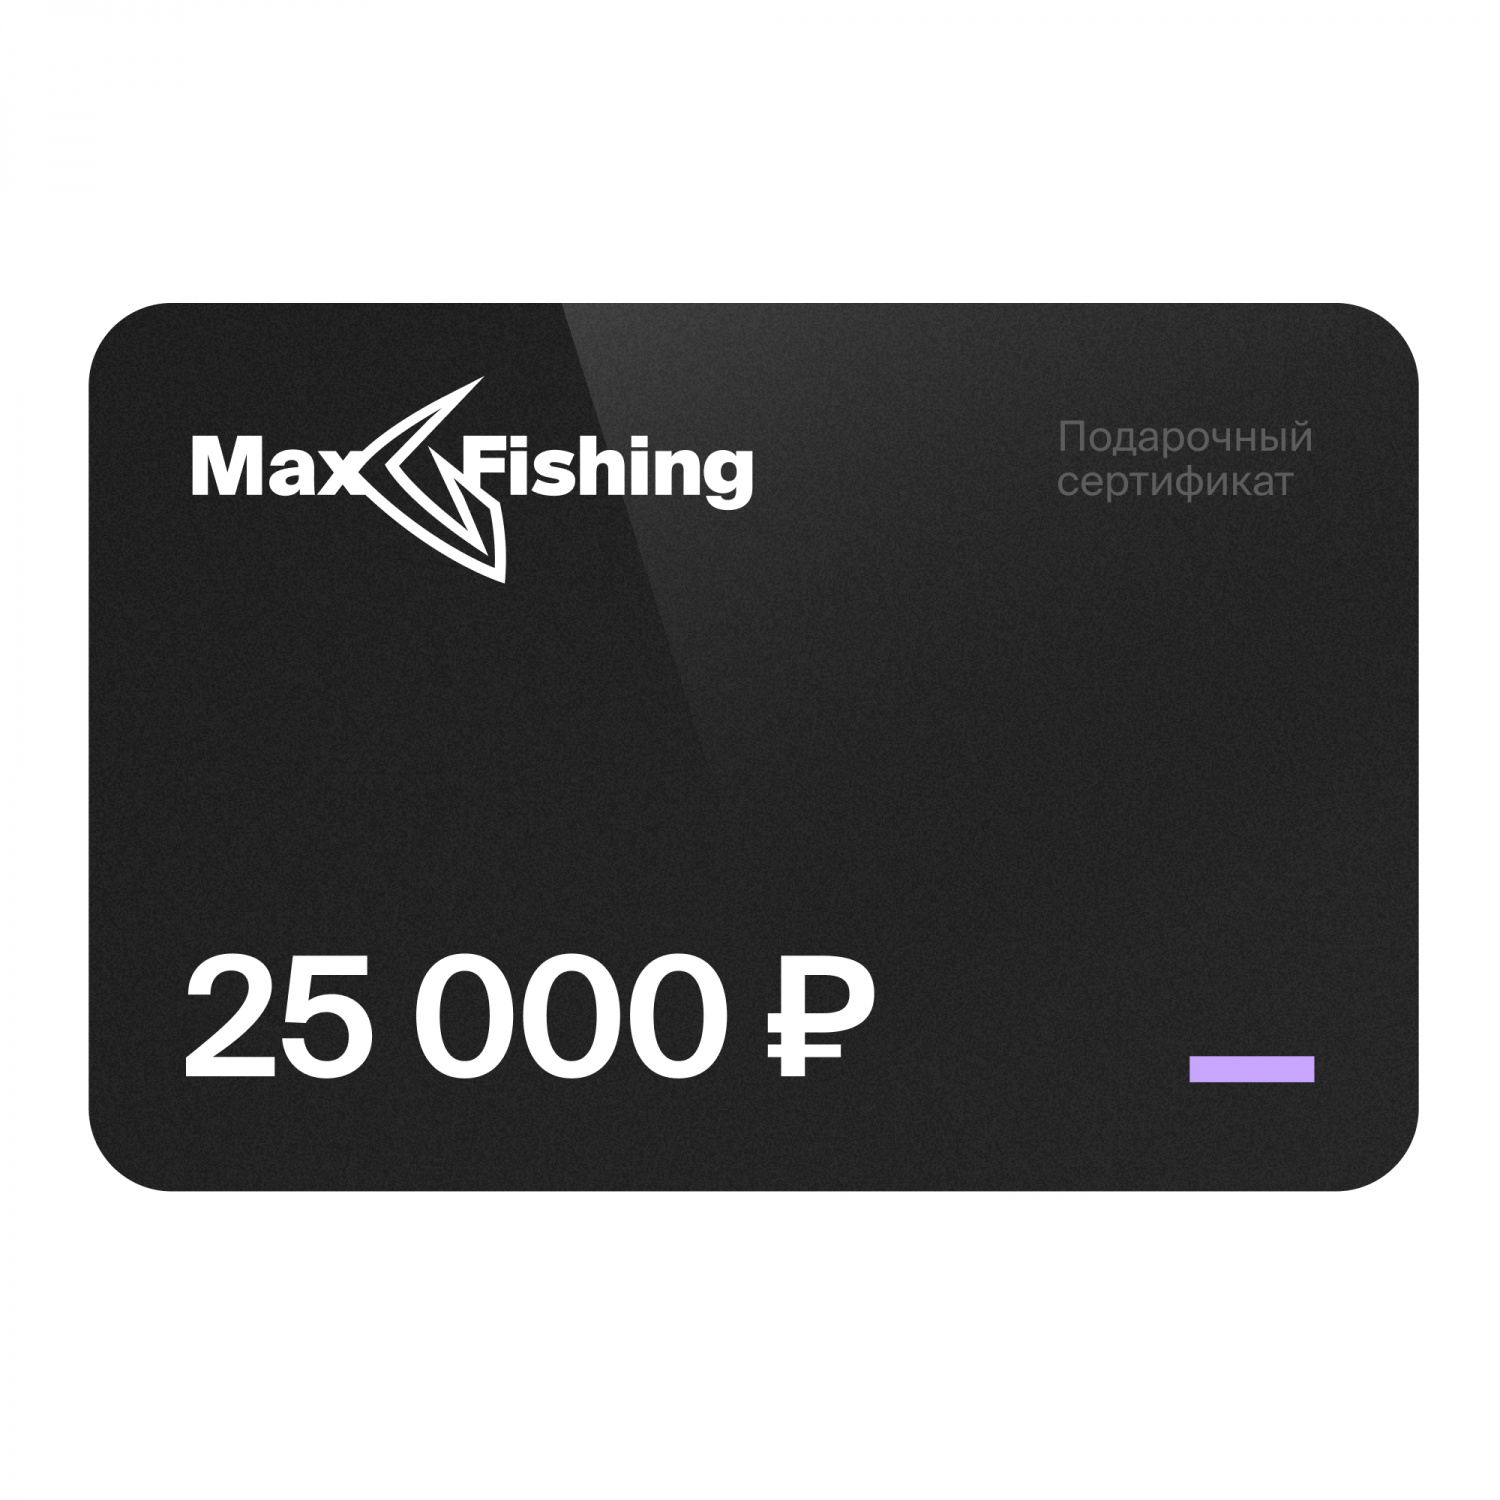 Подарочный сертификат MaxFishing 25 000 ₽ подарочный сертификат на 40 000 рублей